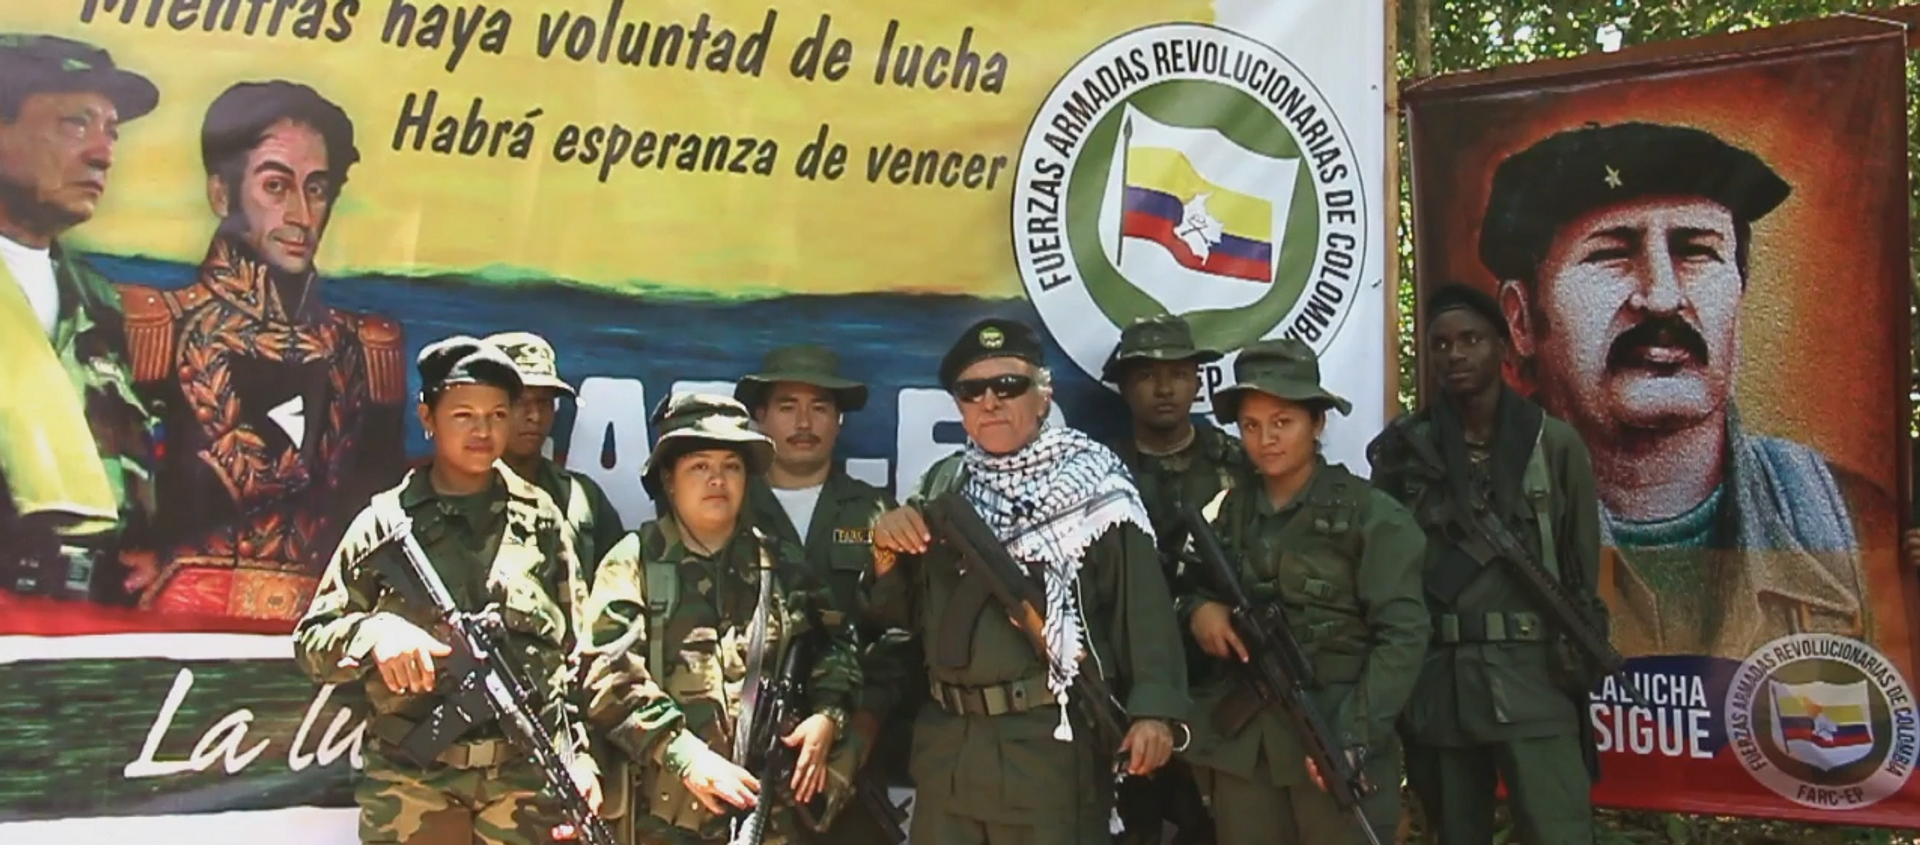 El líder de las FARC Jesús Santrich ofrece una nueva declaración el 31 de agosto de 2019 - Sputnik Mundo, 1920, 01.09.2019